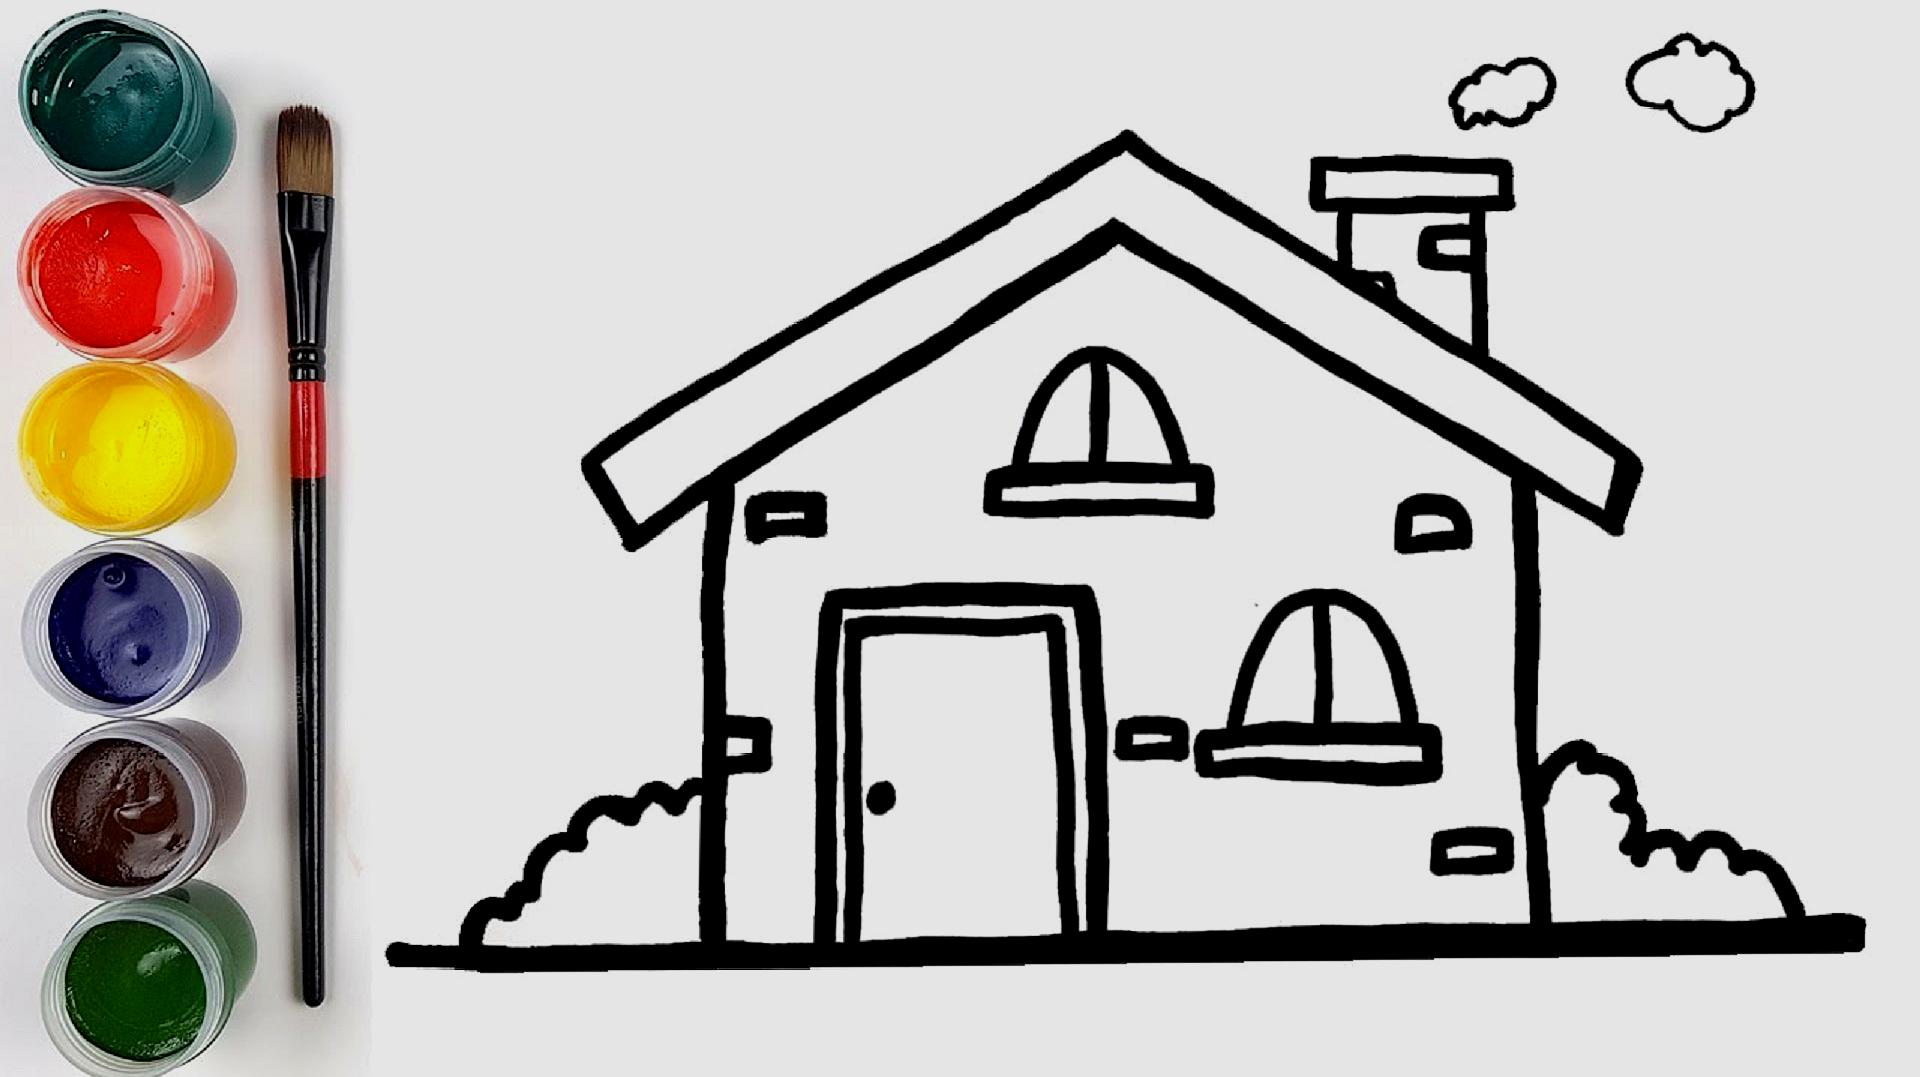 卡通可爱小房子图片素材免费下载 - 觅知网